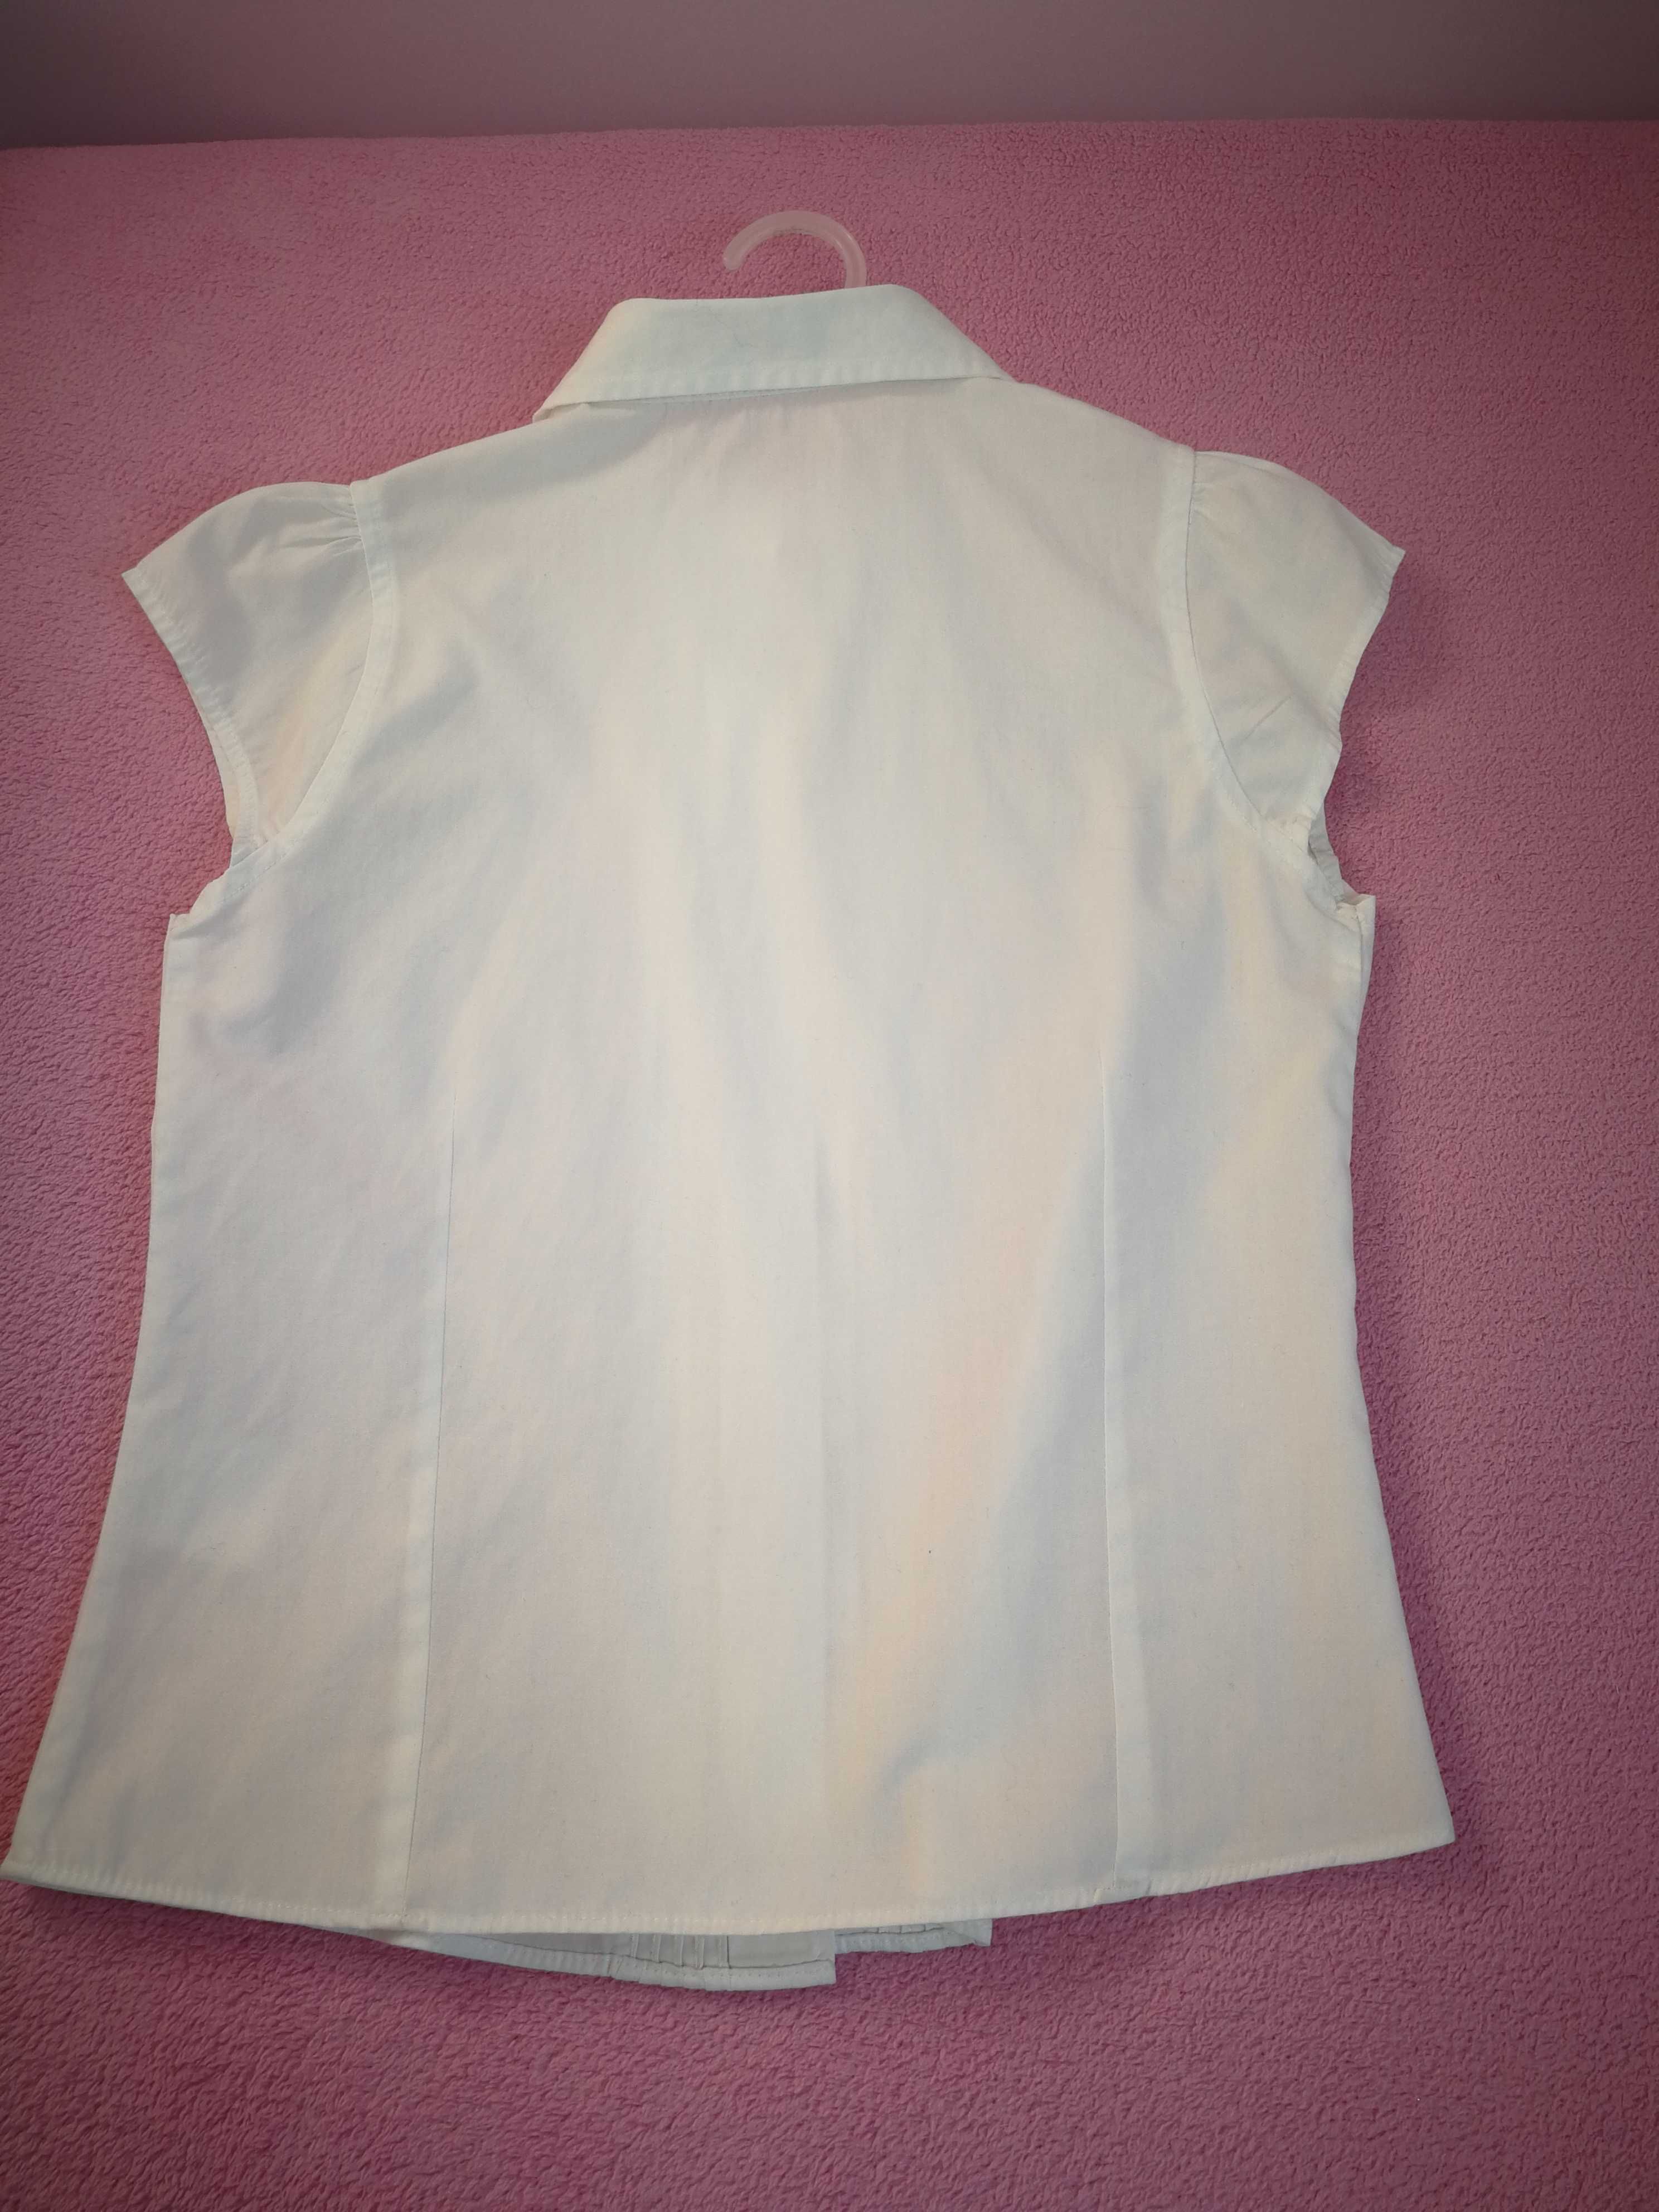 Koszula biała bawełniana dla dziewczynki 122cm.nowa